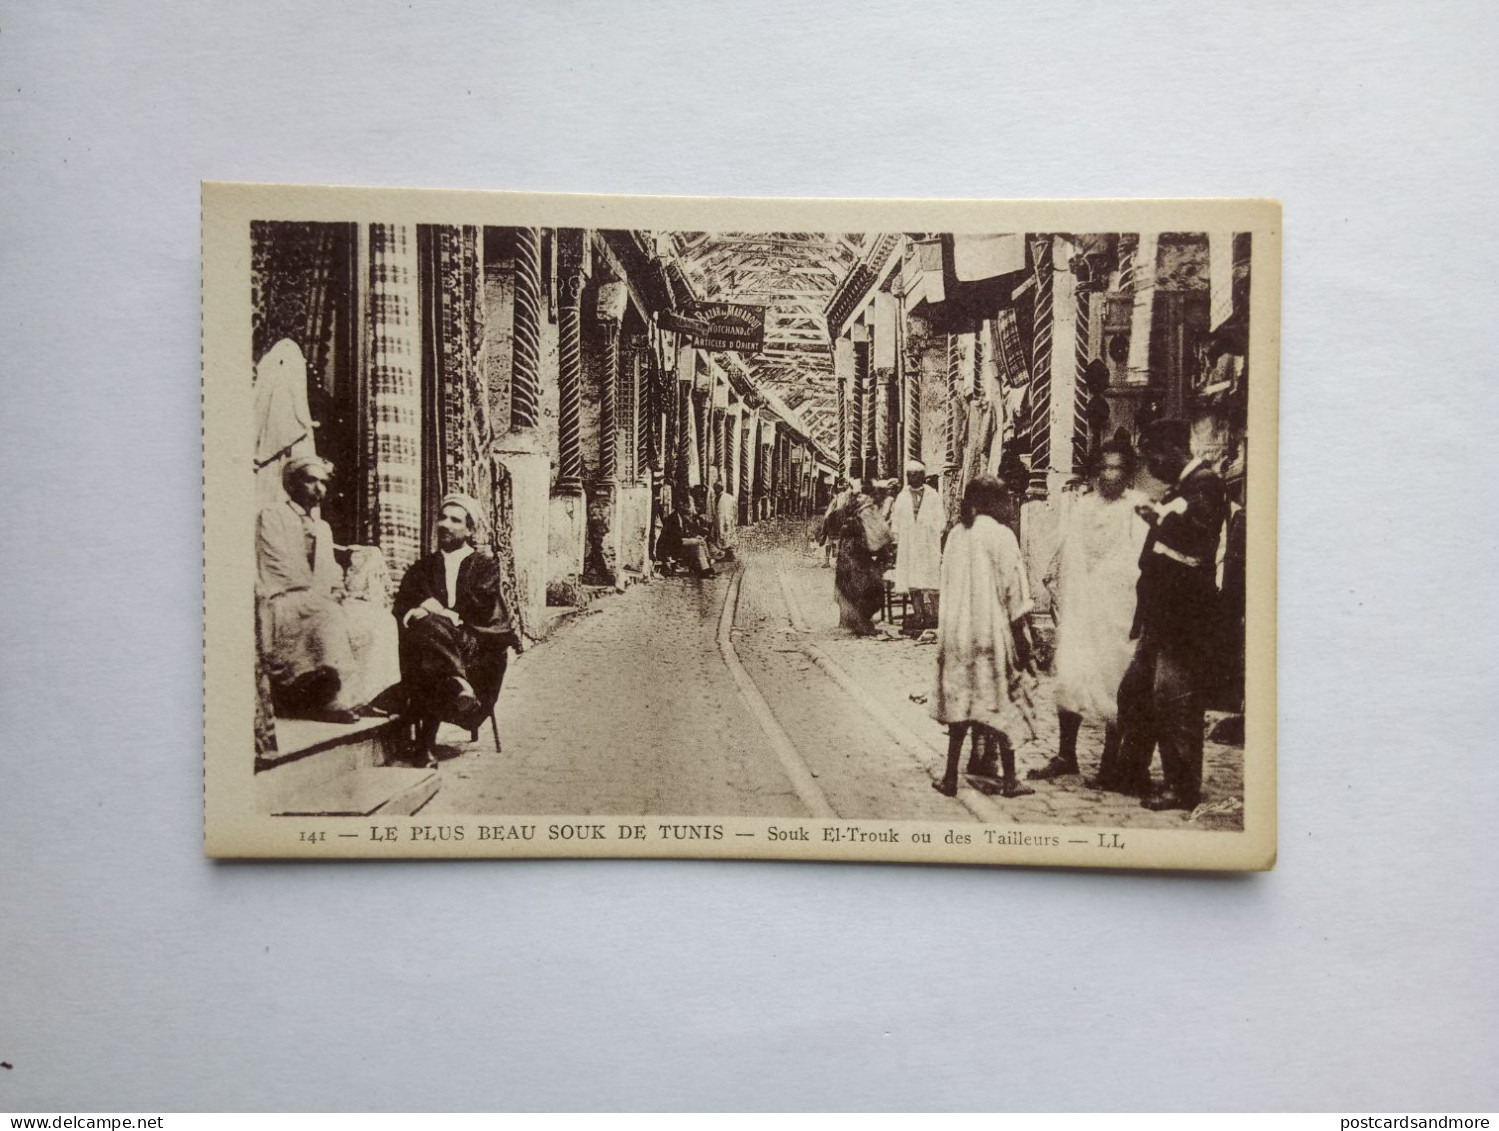 Tunisia Lot of 38 unused postcards Lévy et Neurdein Réunis ca. 1925